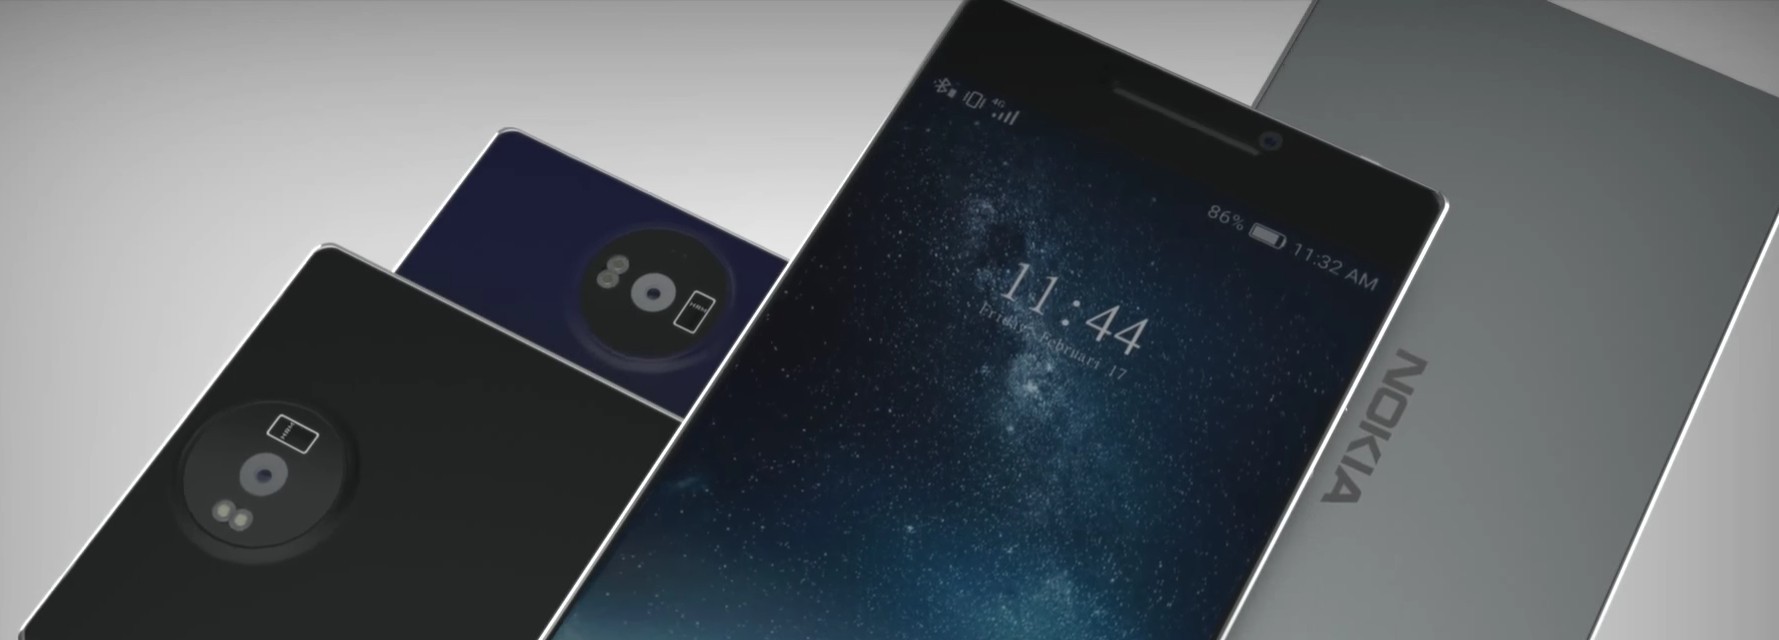 Nokia 8 được đặt trước với giá $465 tại Trung Quốc